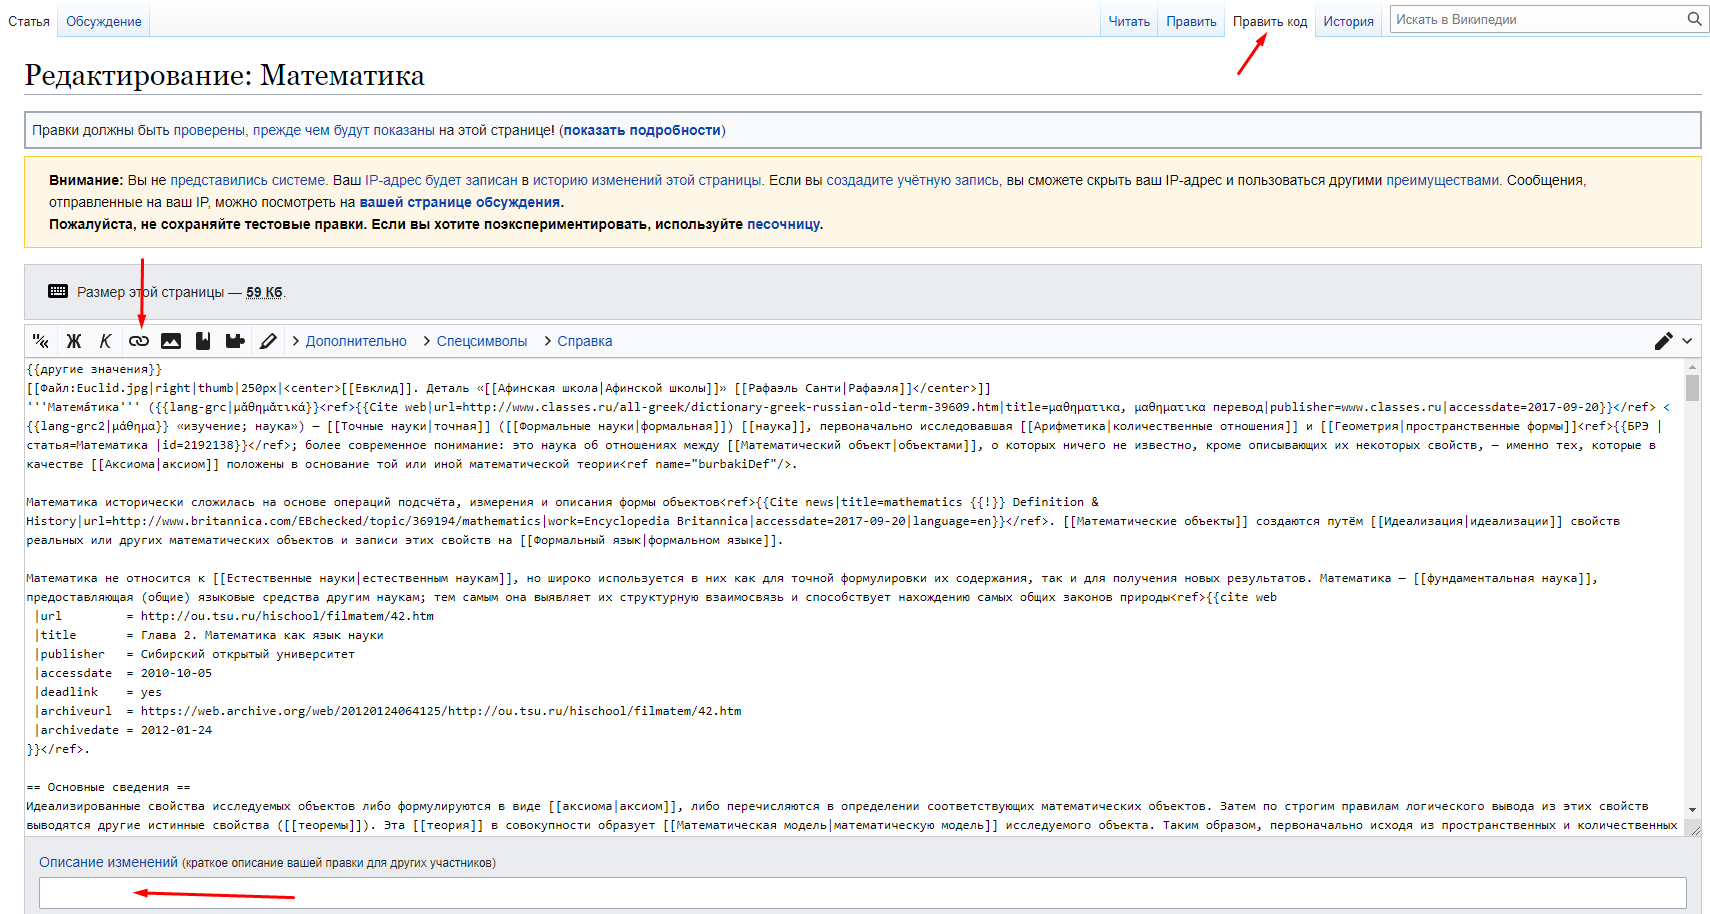 Получение обратных ссылок из Википедии. Инструкция